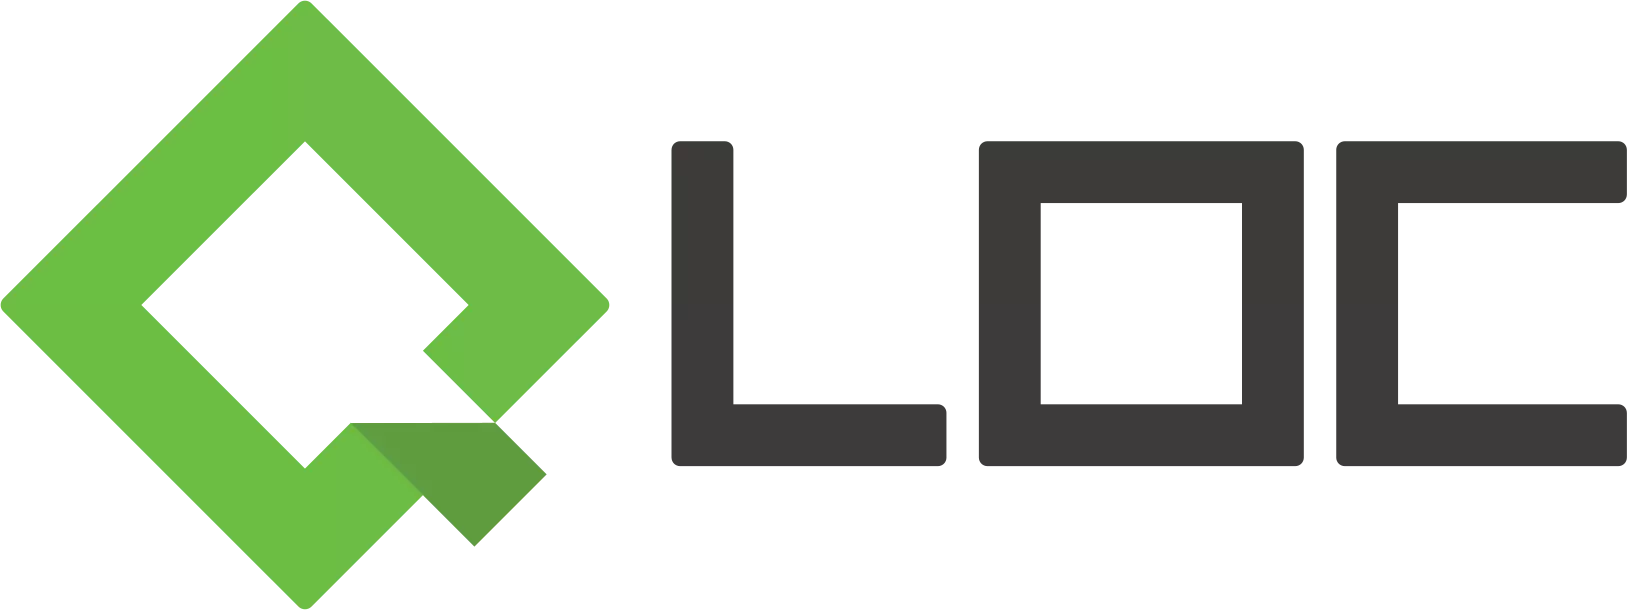 QLOC — польская сервисная компания, работающая в индустрии компьютерных игр, и базирующаяся в Варшаве и Гданьске.